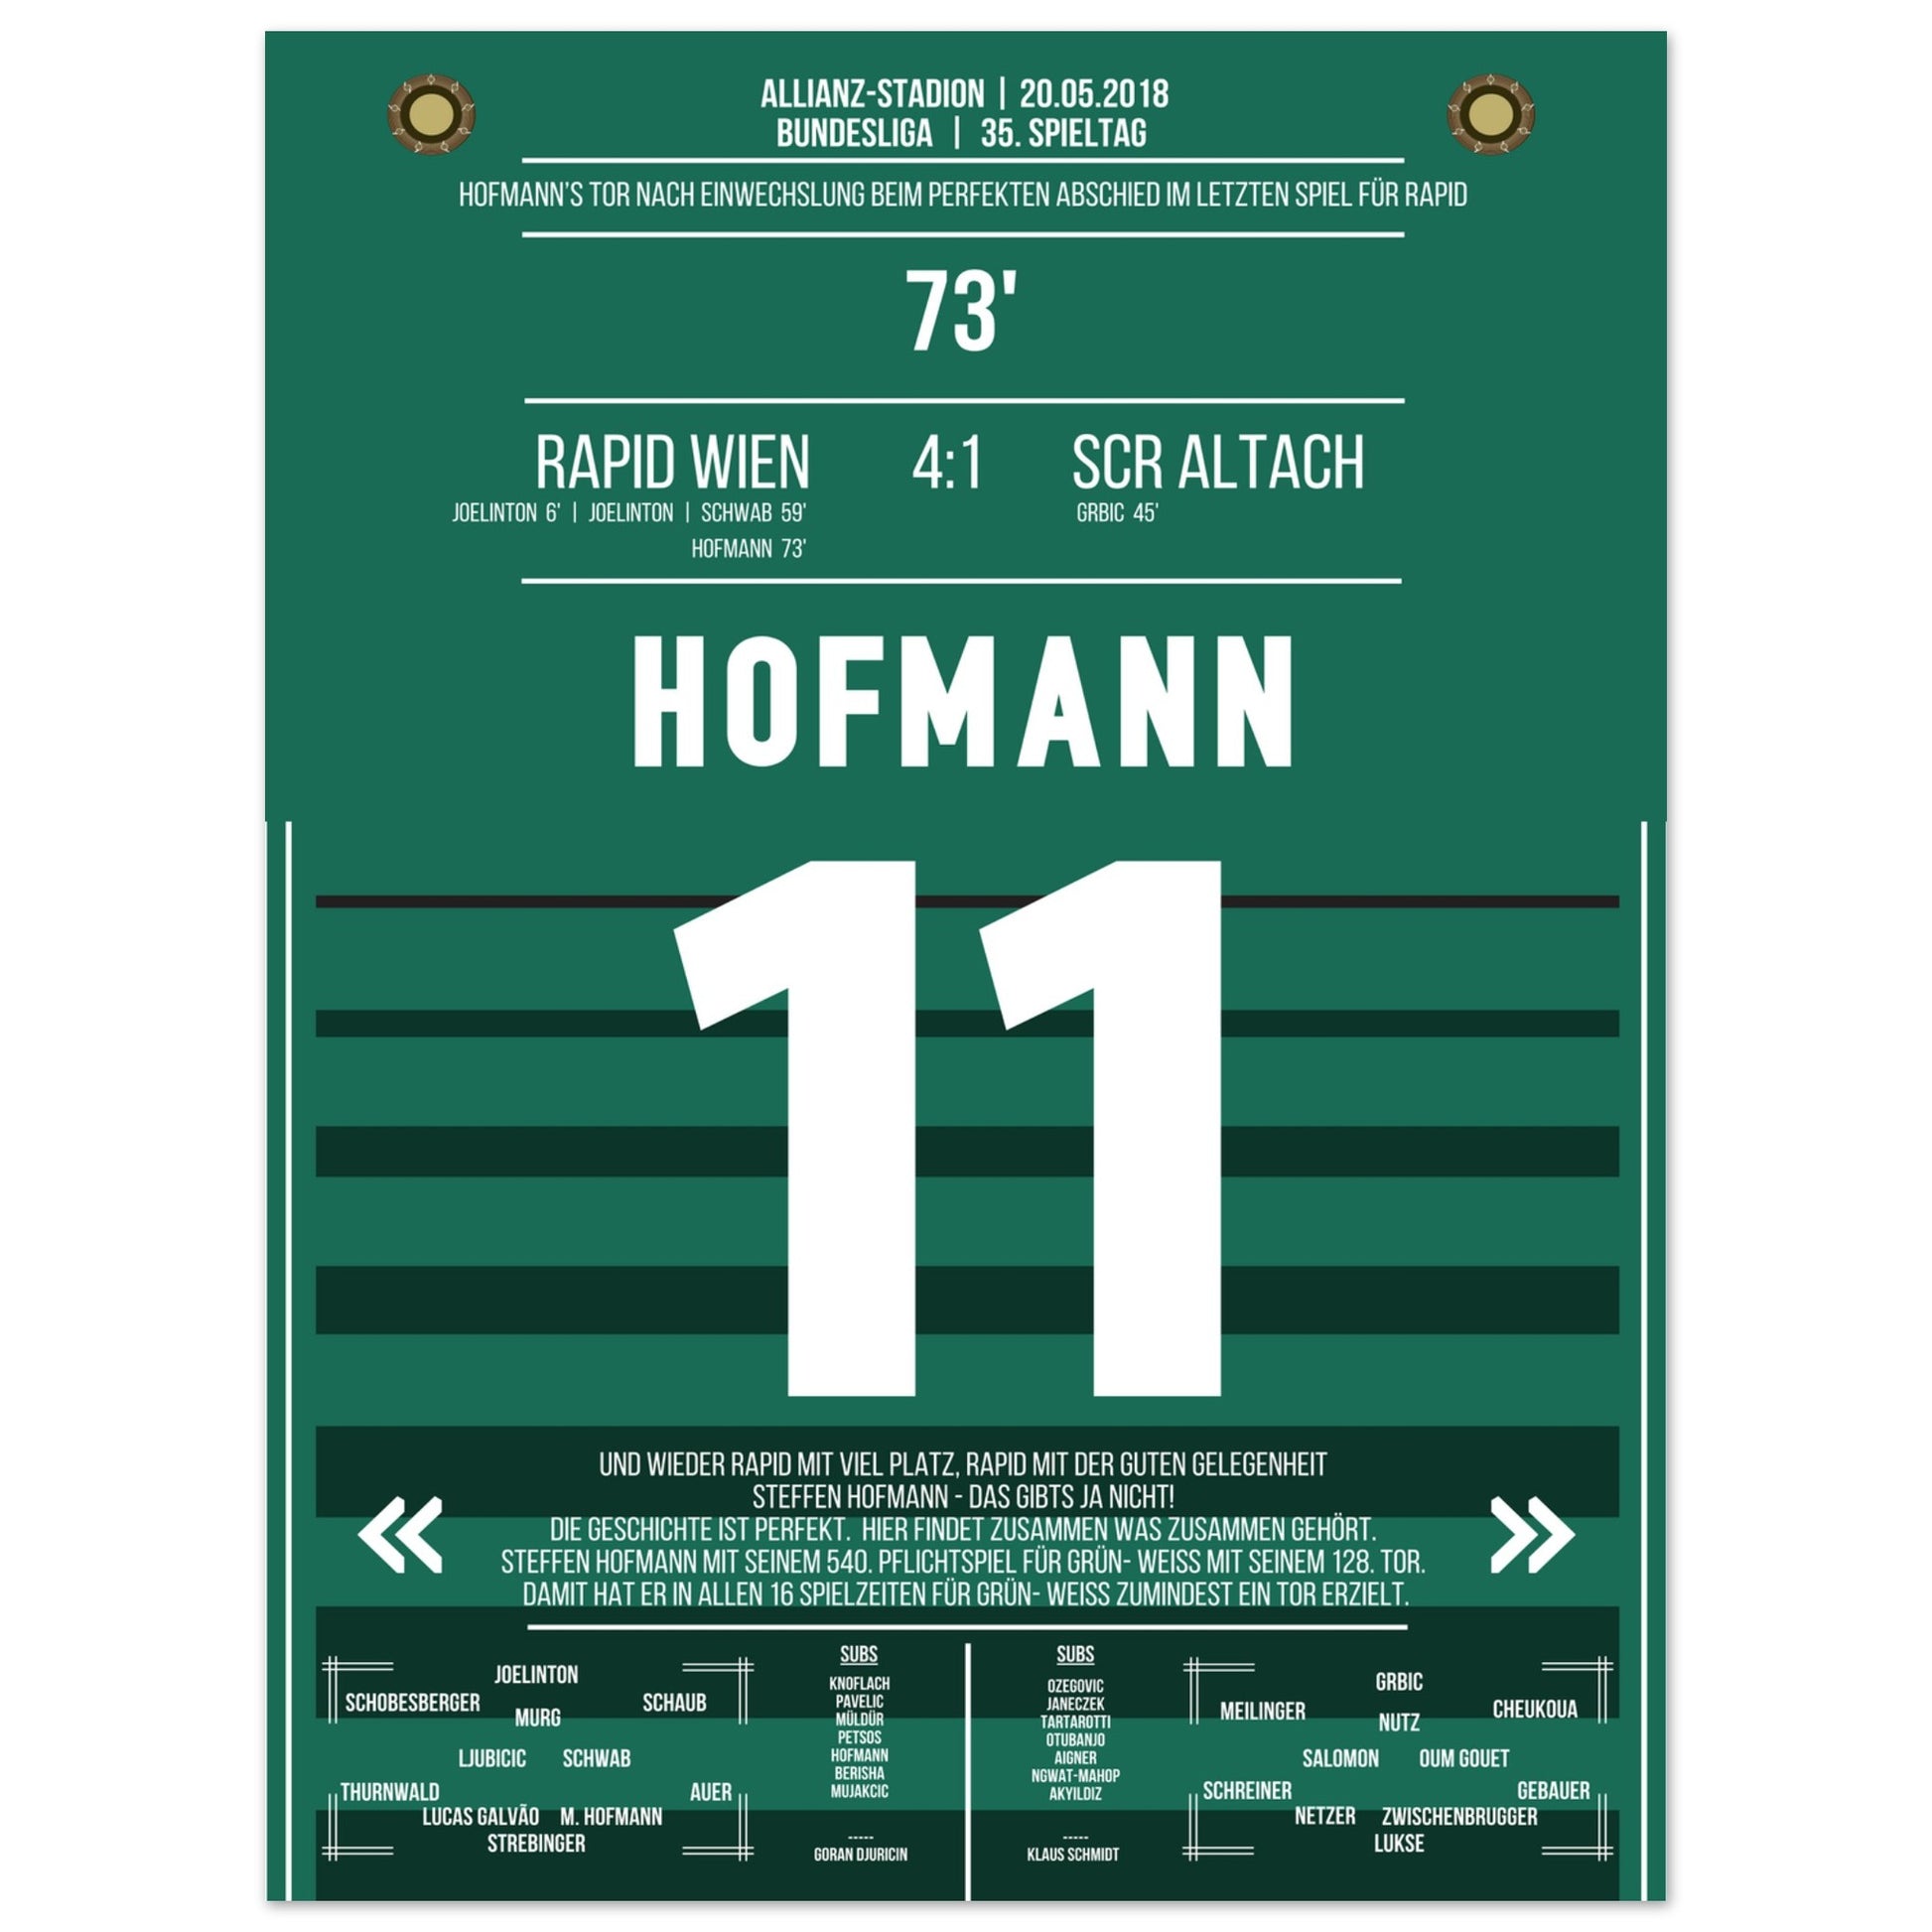 Hofmann's perfekter Abschied im letzten Spiel für Rapid 30x40-cm-12x16-Ohne-Rahmen